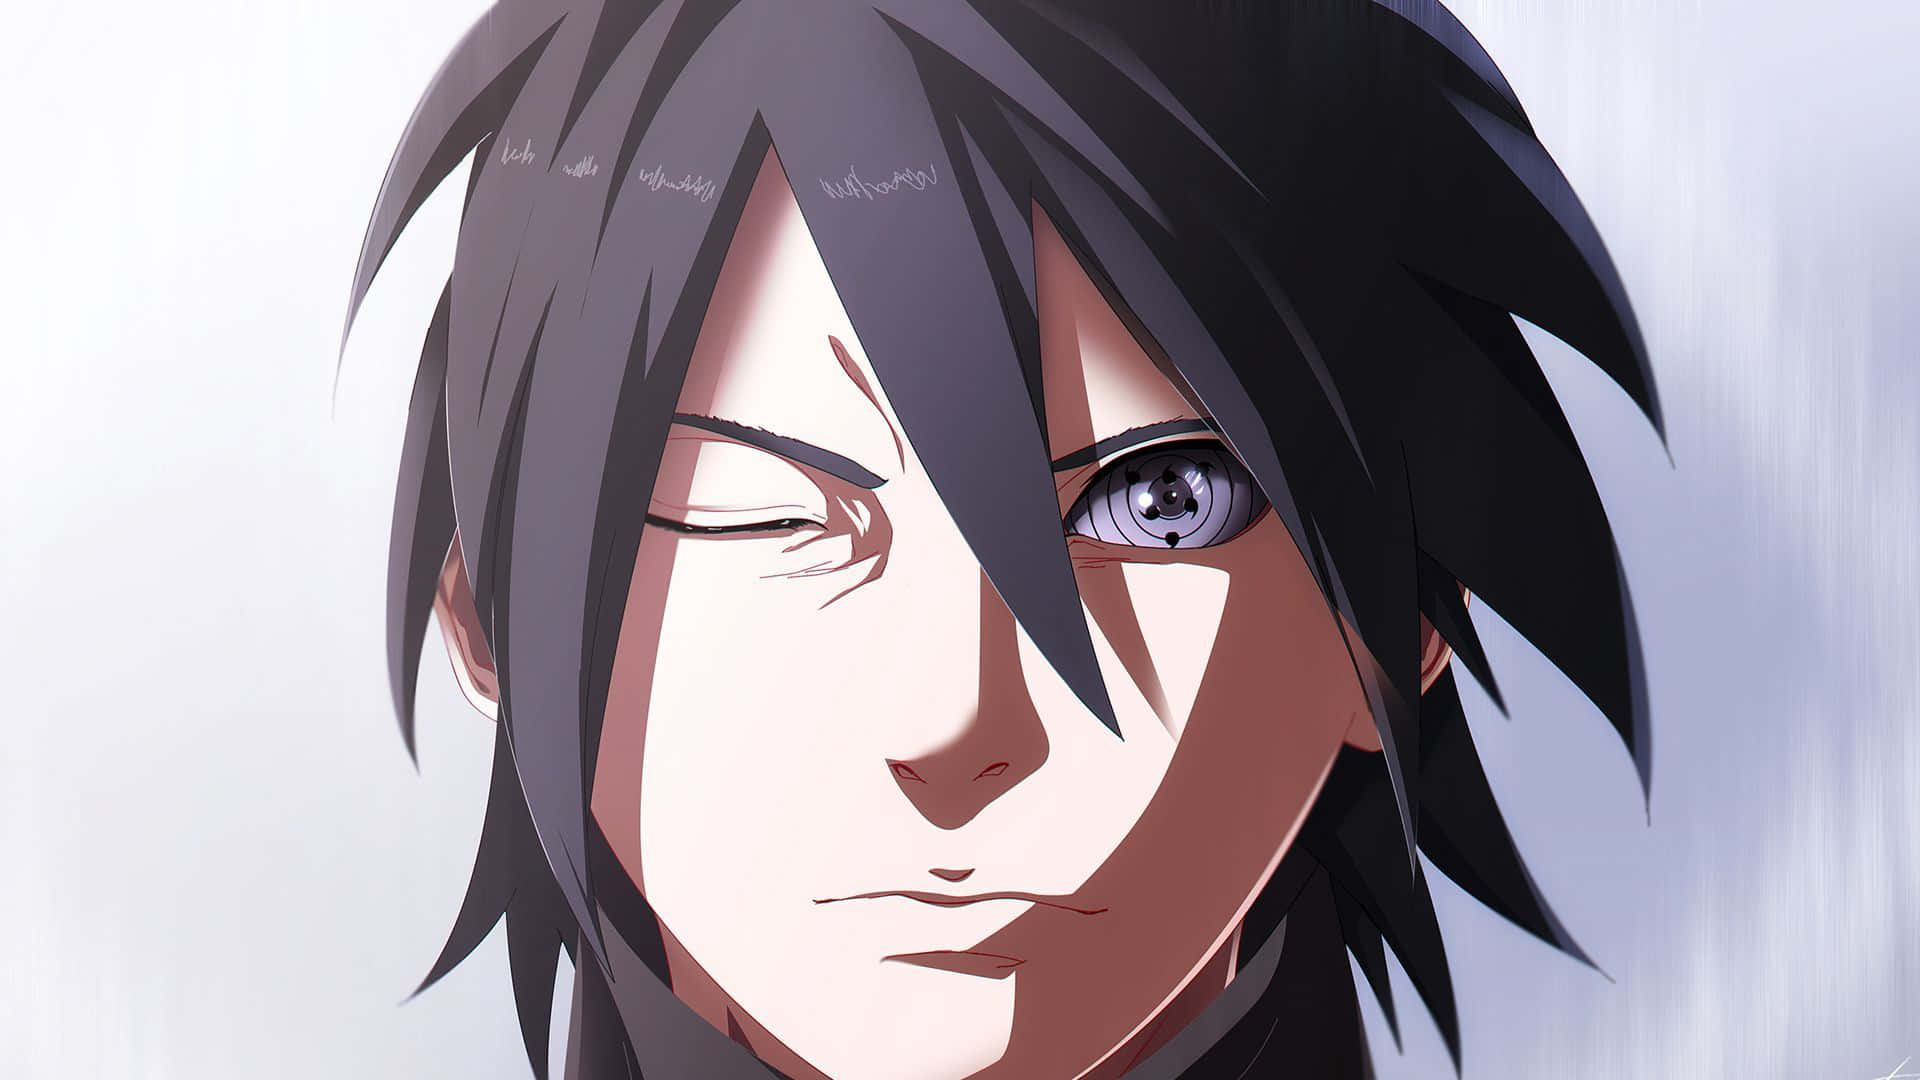 "Intensely focused on the task ahead, Sasuke stares straight ahead" Wallpaper